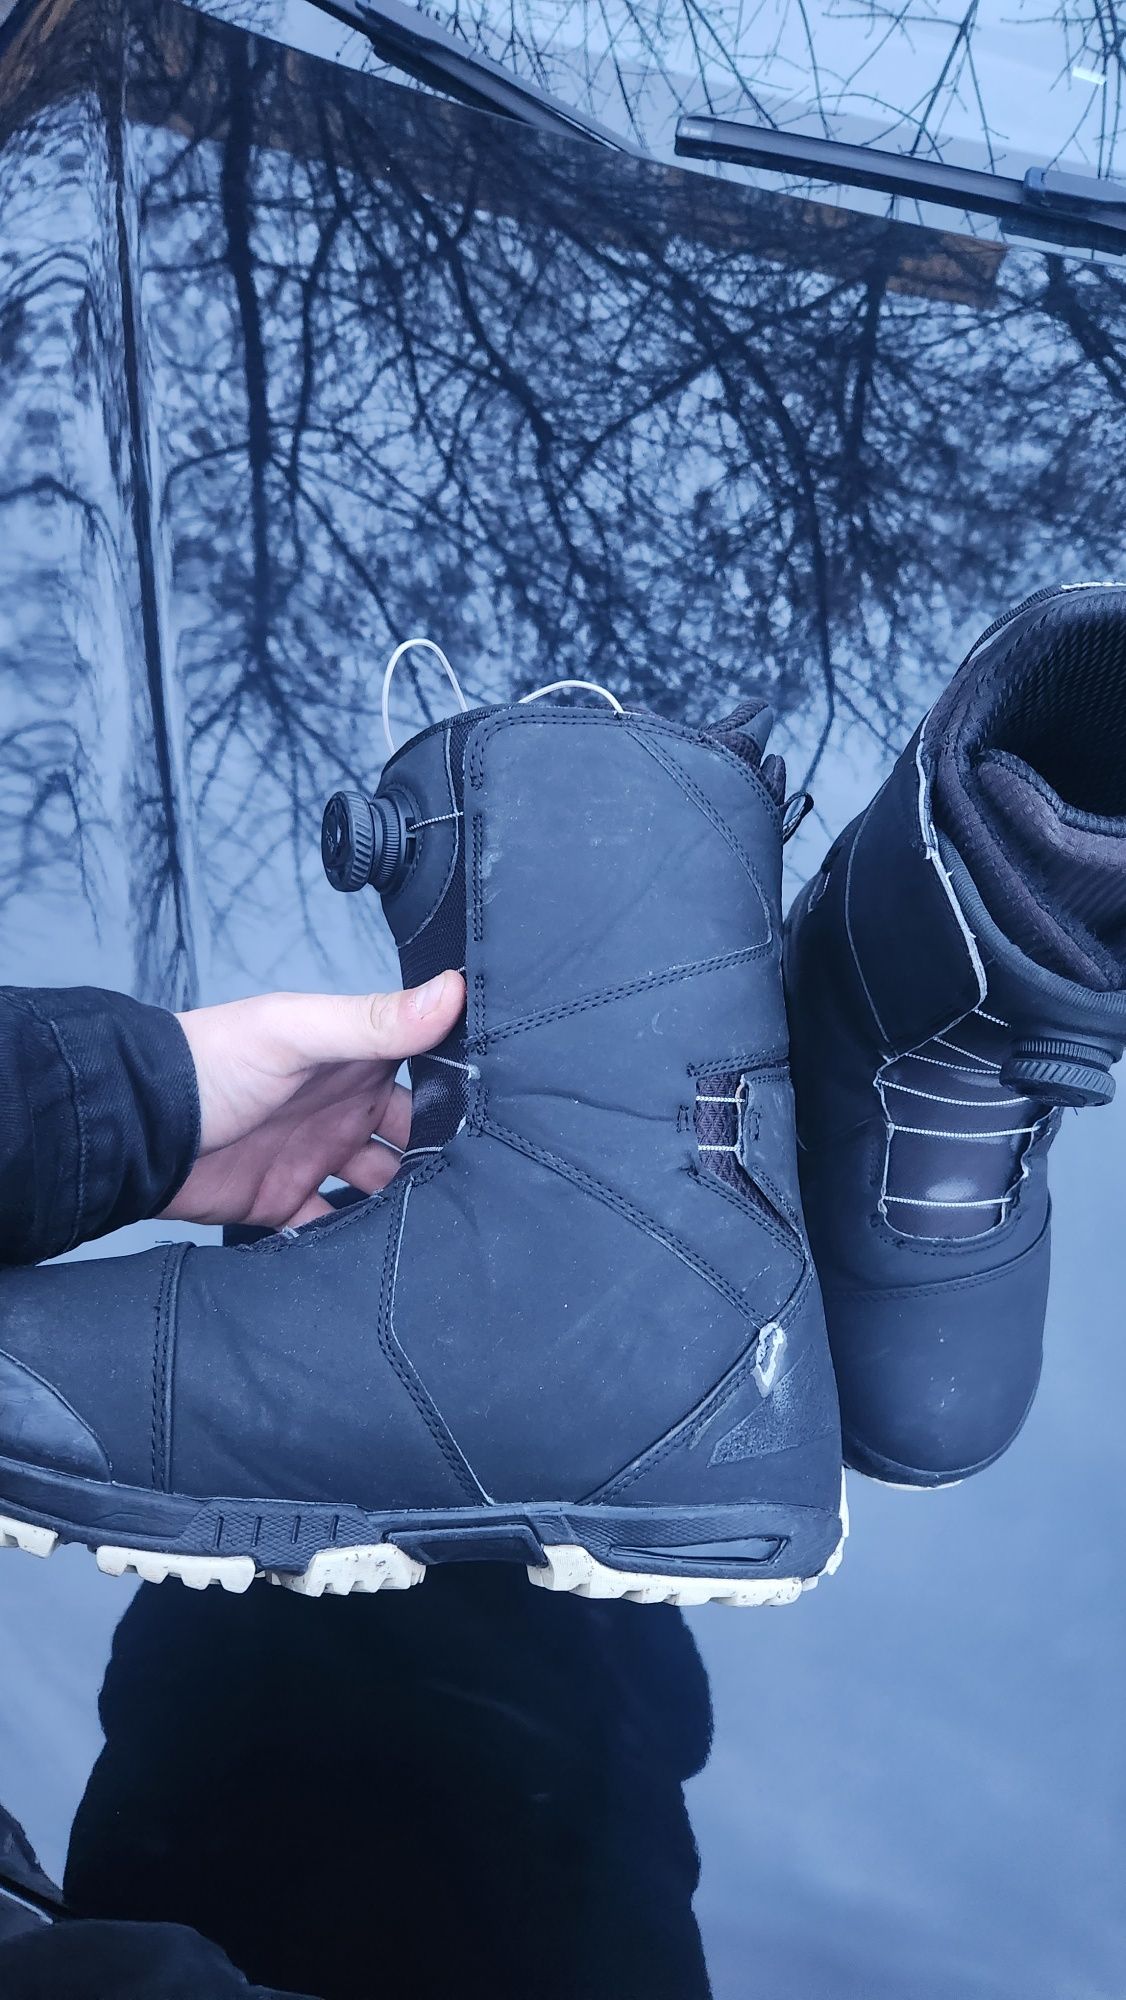 Boots burton snowboard 43